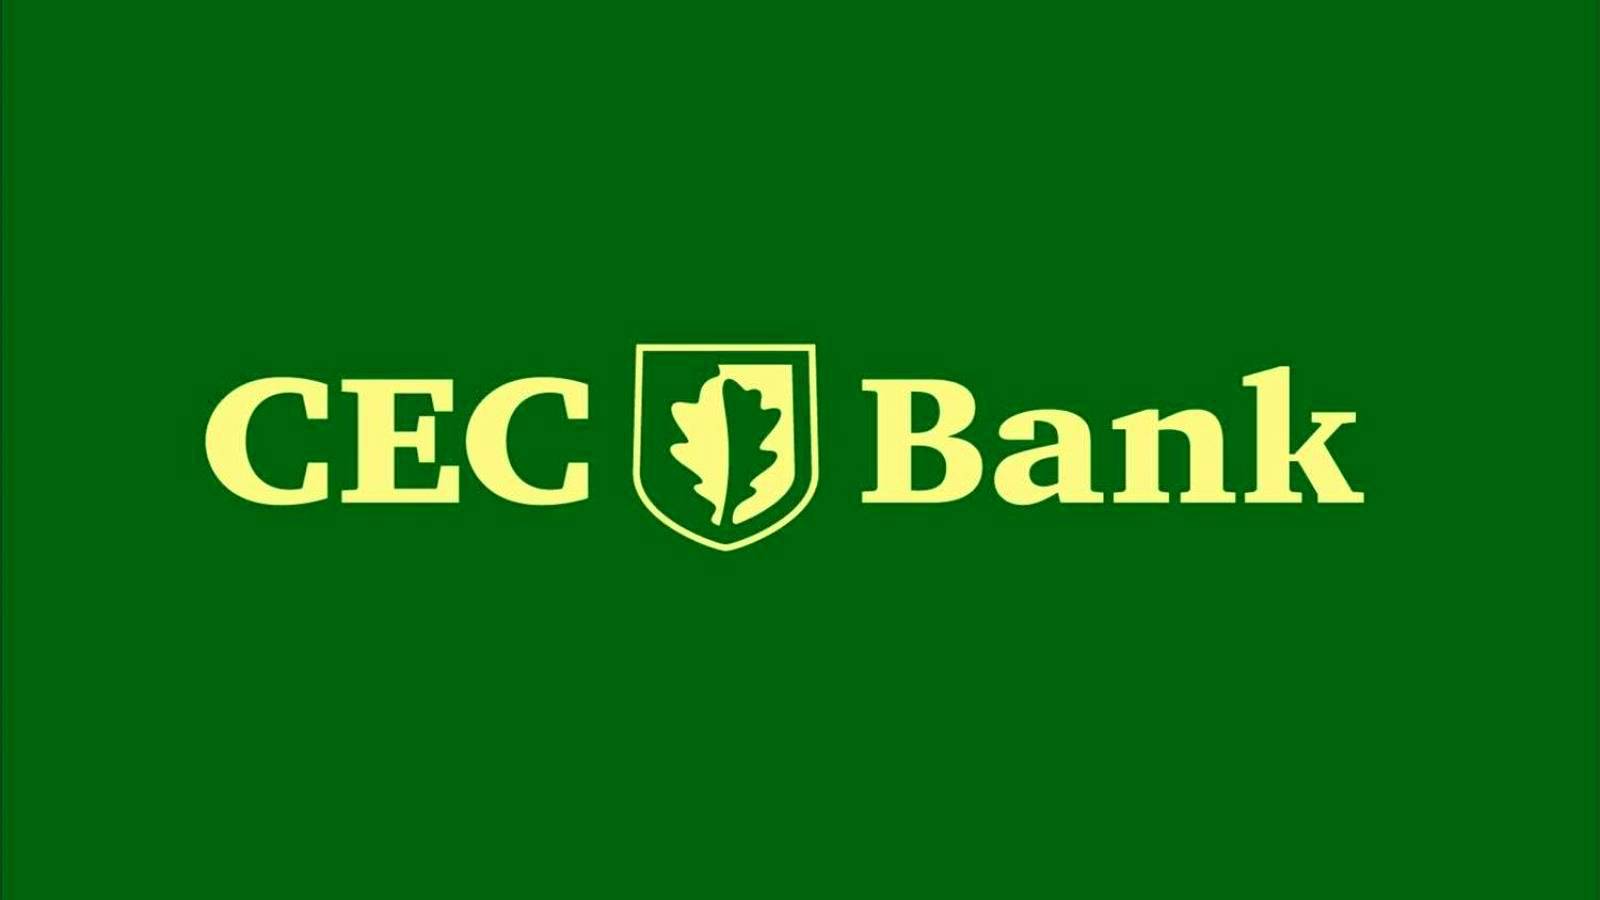 CEC Bank åbning